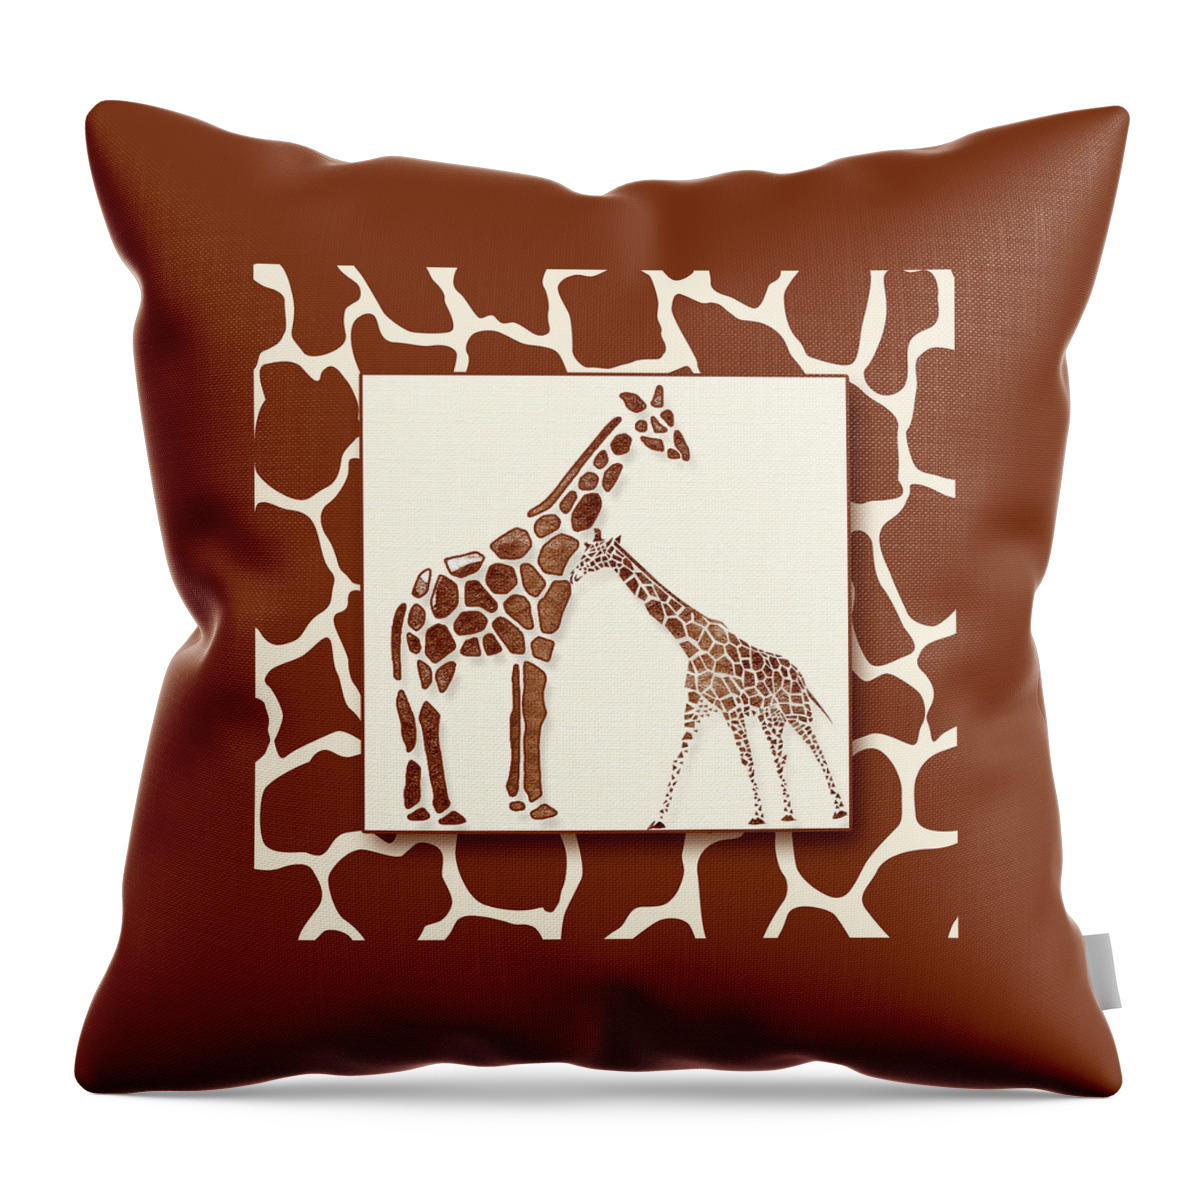 A Sweet Giraffe Pair Throw Pillow featuring the digital art Giraffe Pair by Doreen Erhardt